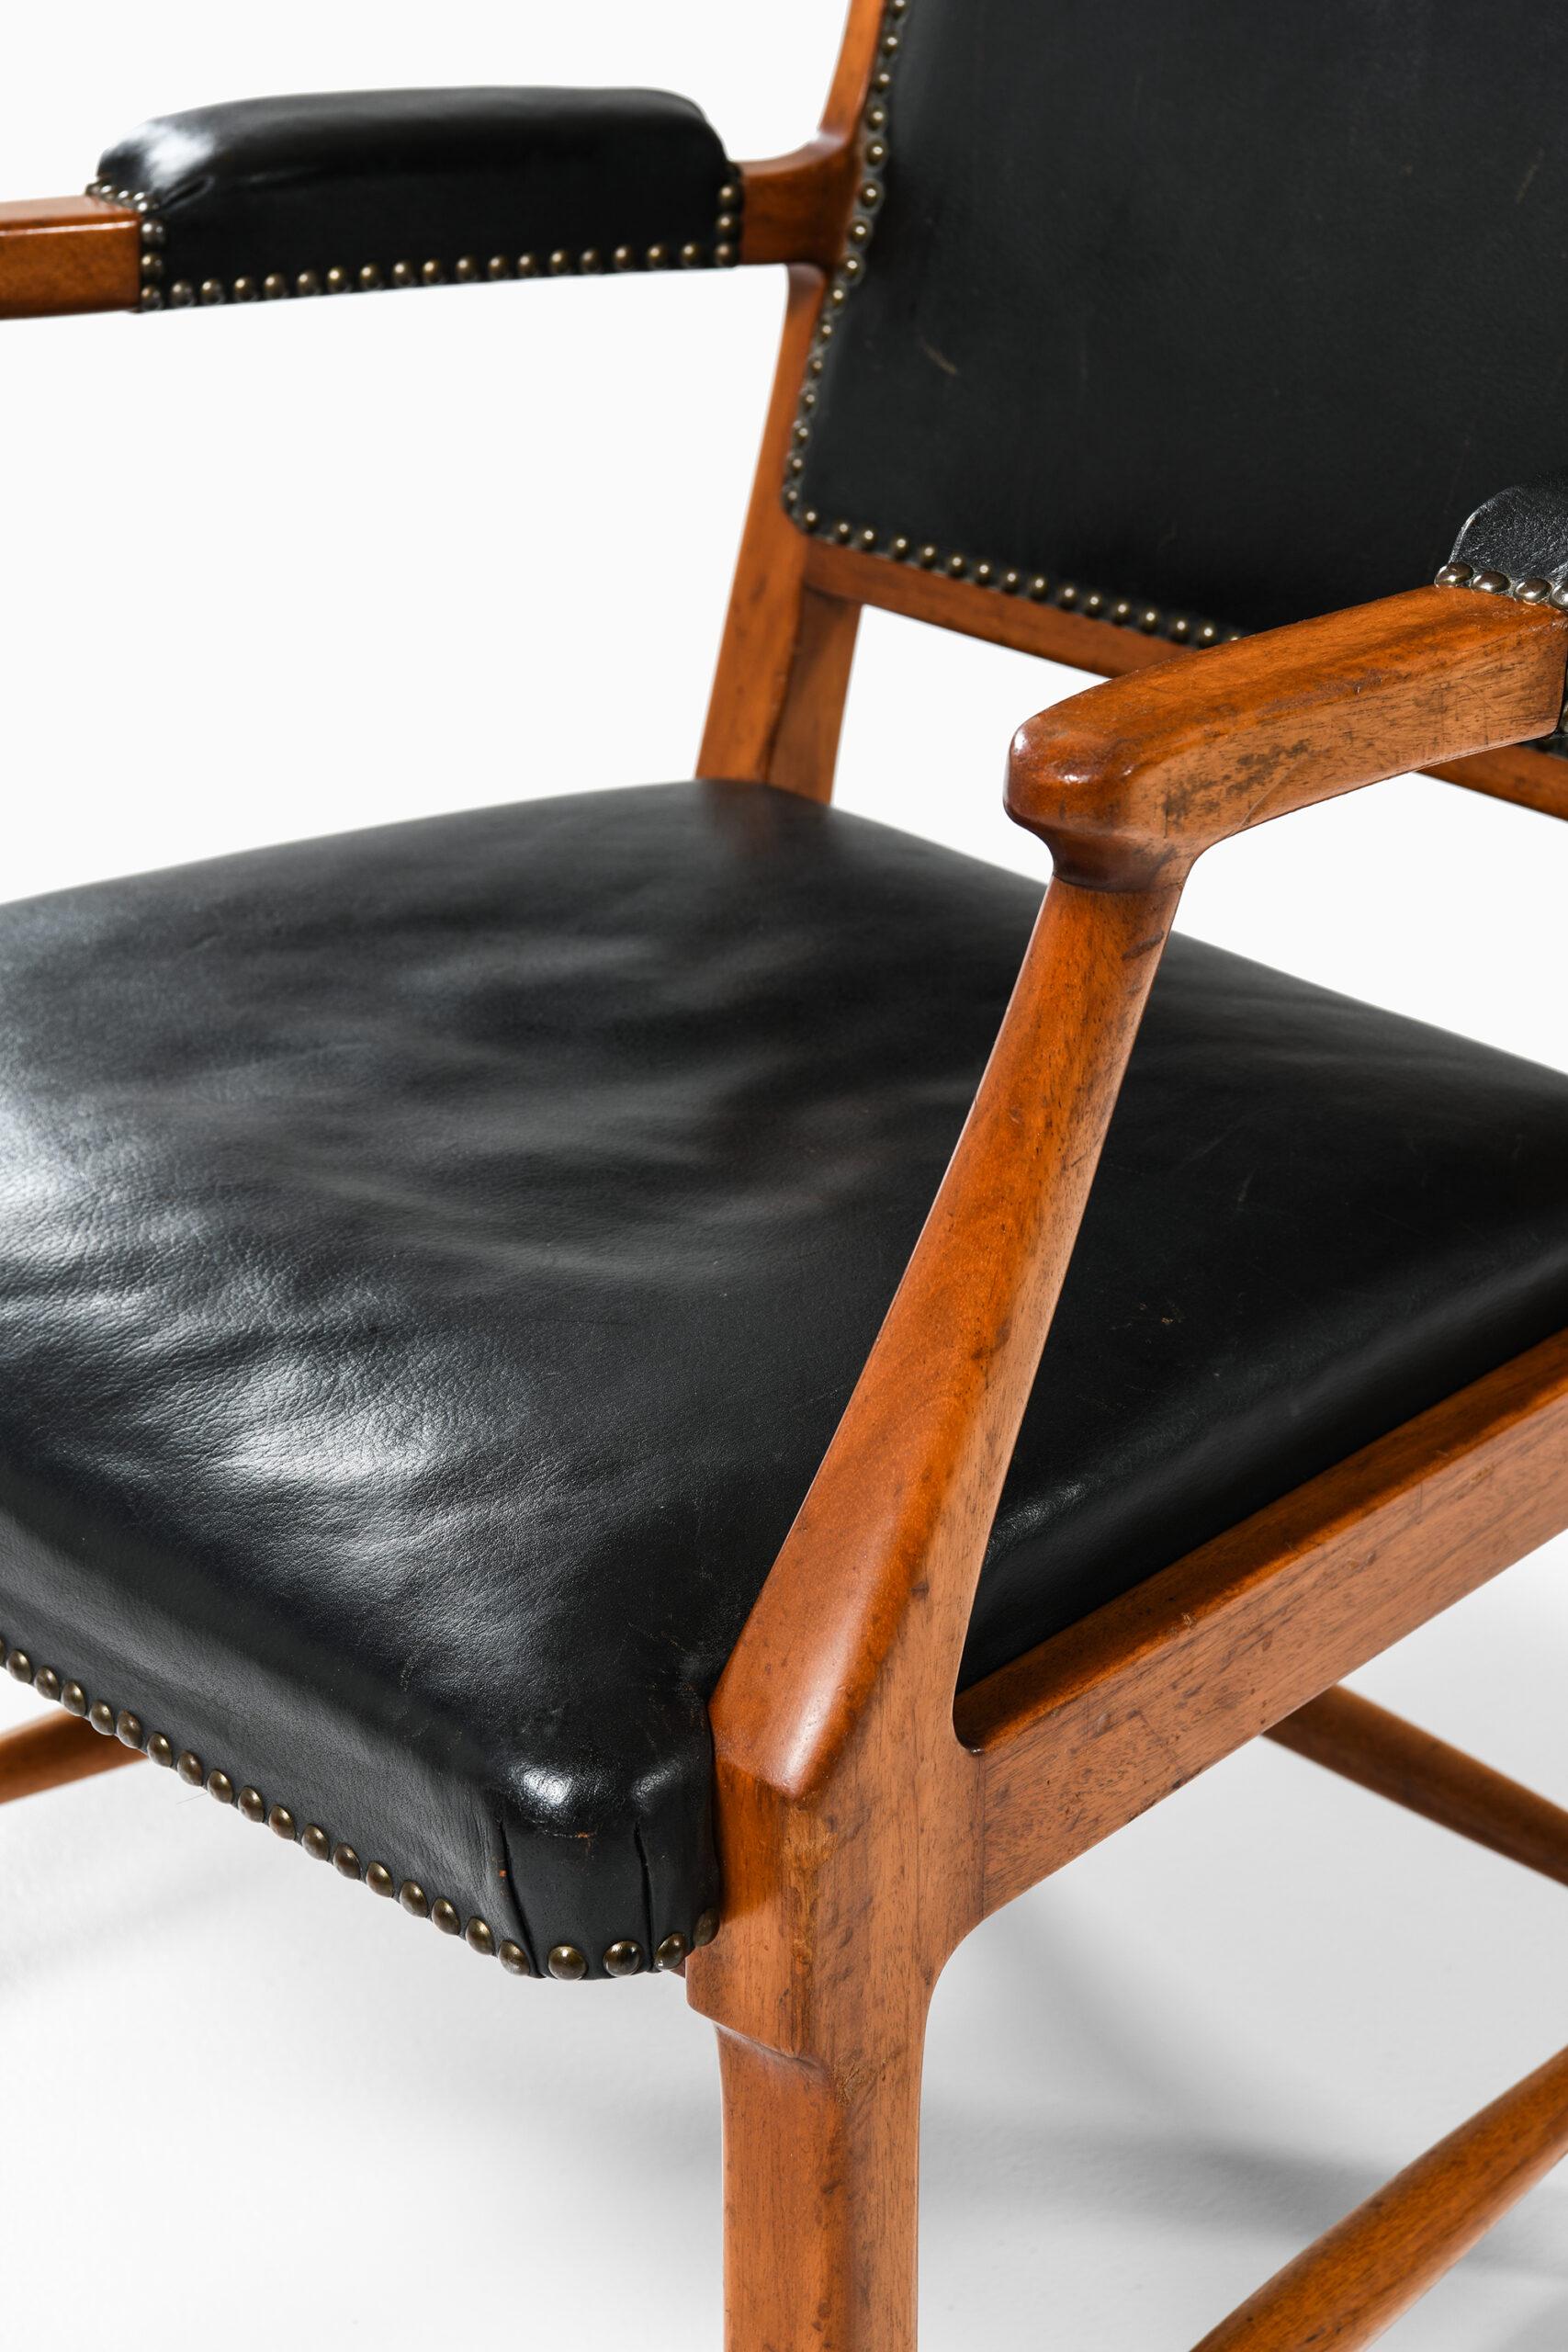 Seltenes Sesselpaar nach einem Entwurf von Erik Chambert. Produziert von Chamberts möbelfabriker in Norrköping, Schweden.